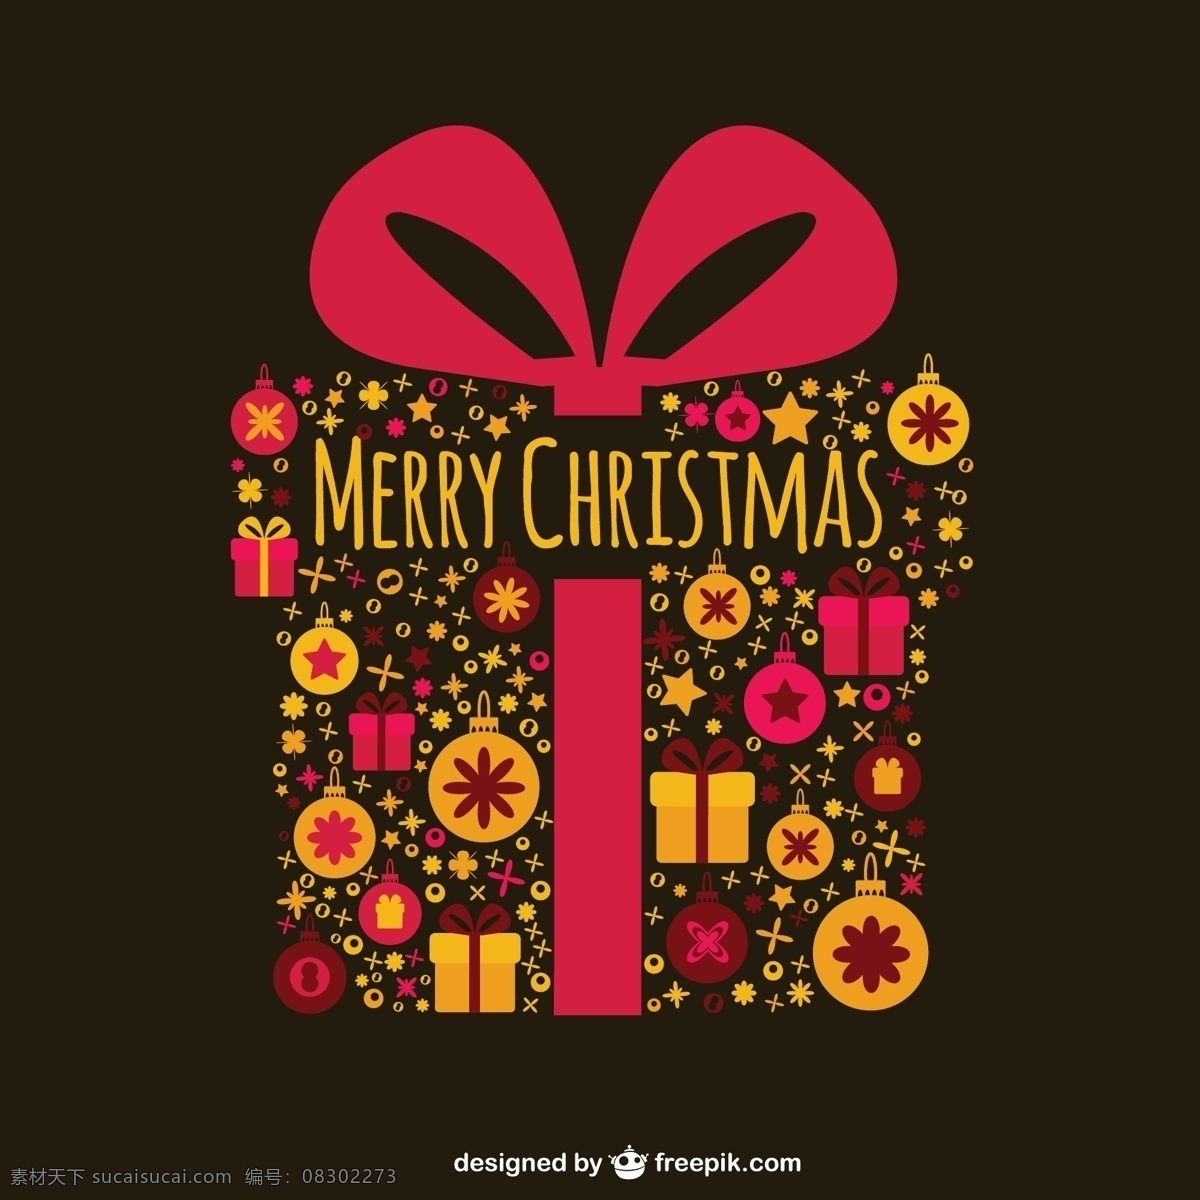 创意 丝带 圣诞 礼盒 创意圣诞 圣诞礼盒 christmas merry 蝴蝶结 礼物 吊球 四叶草 黑色